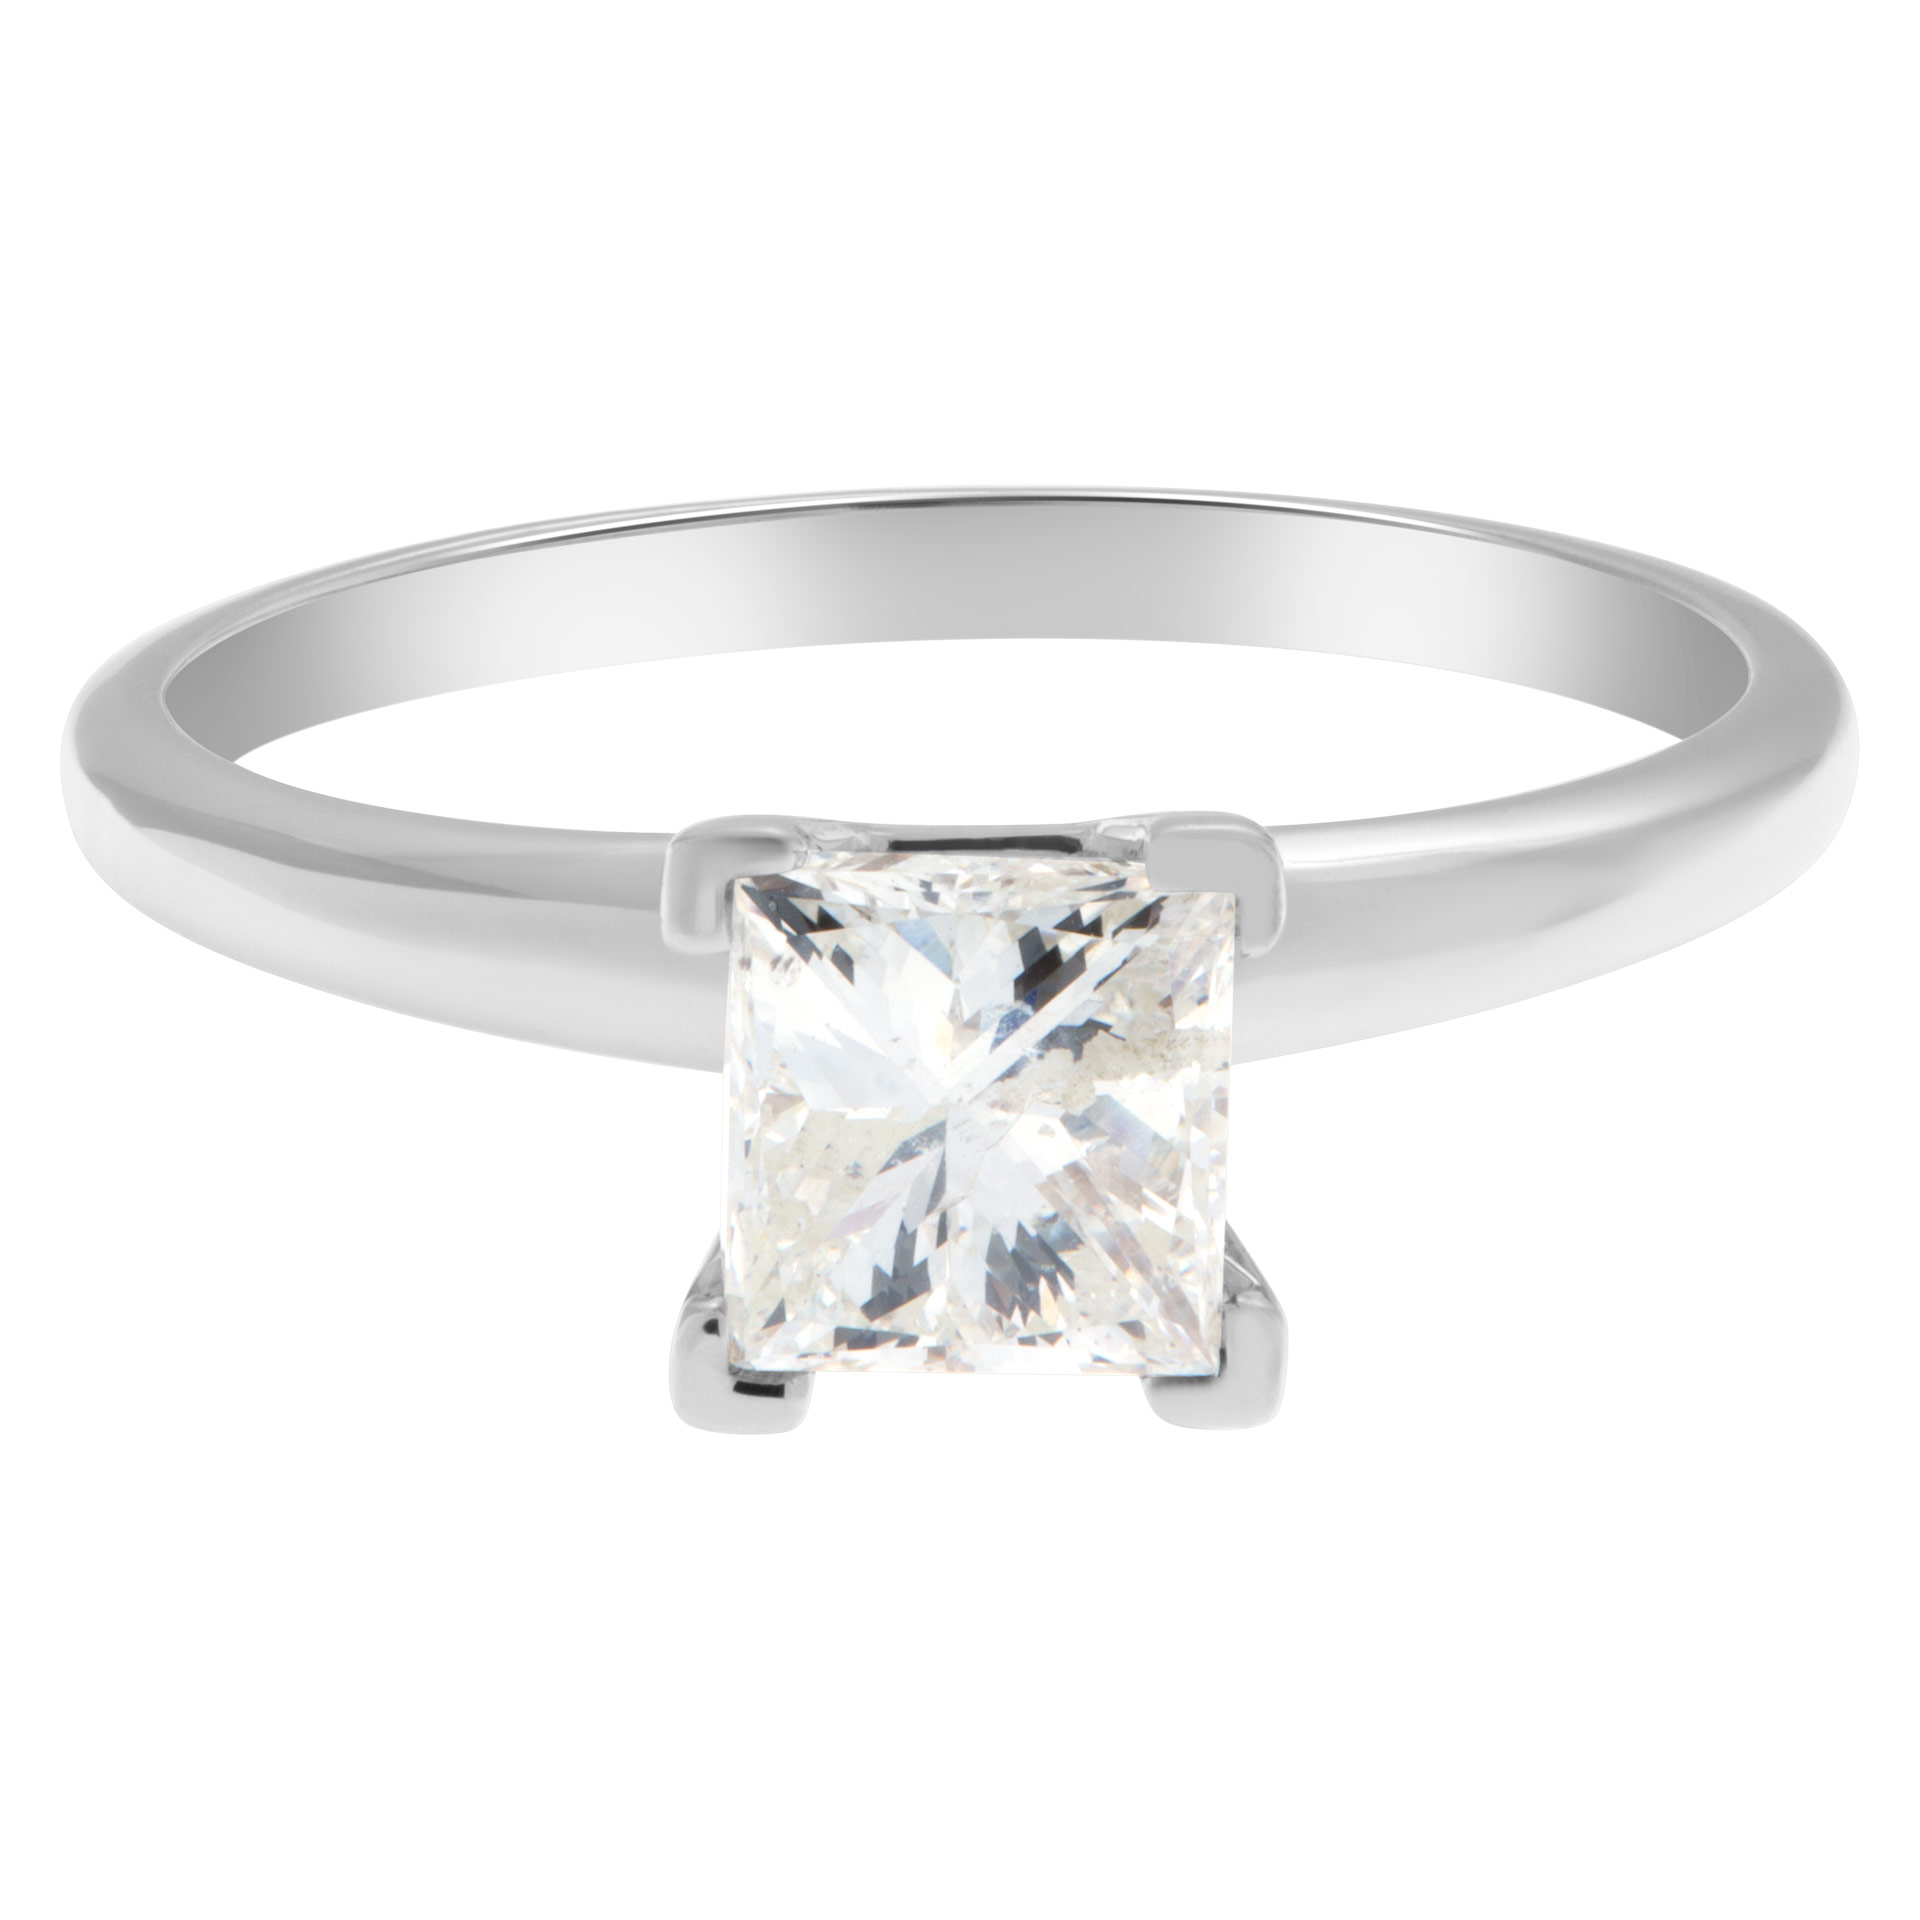 Princess cut 0.98 carat diamond ring set in 14k white gold